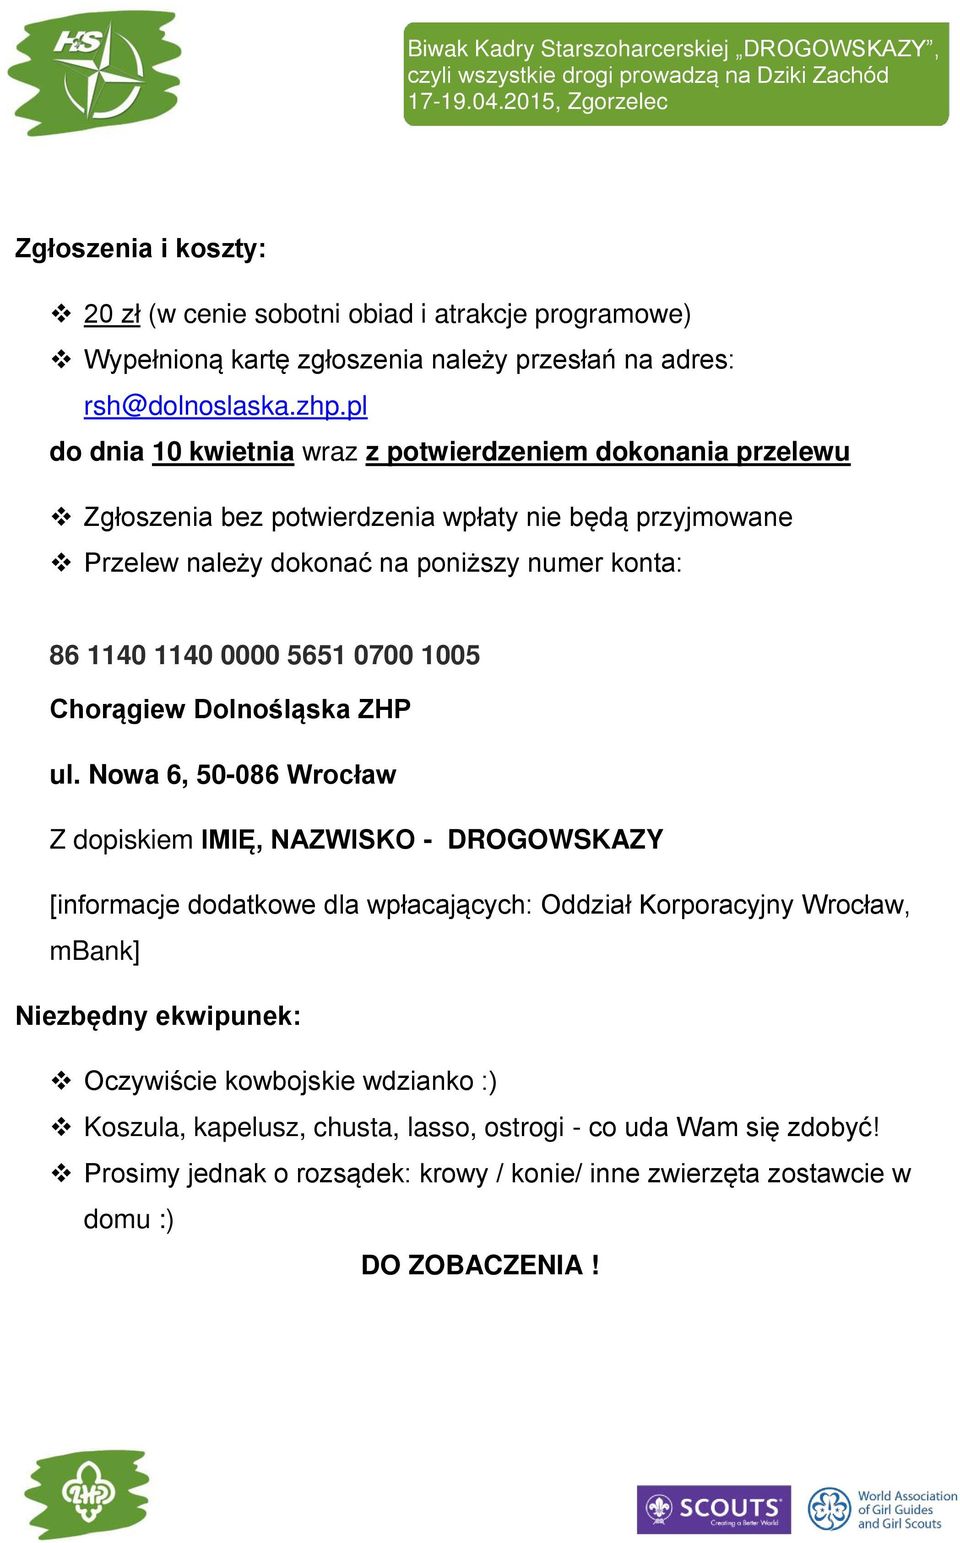 Referat Starszoharcerski Chorągwi Dolnośląskiej ZHP - PDF Free Download